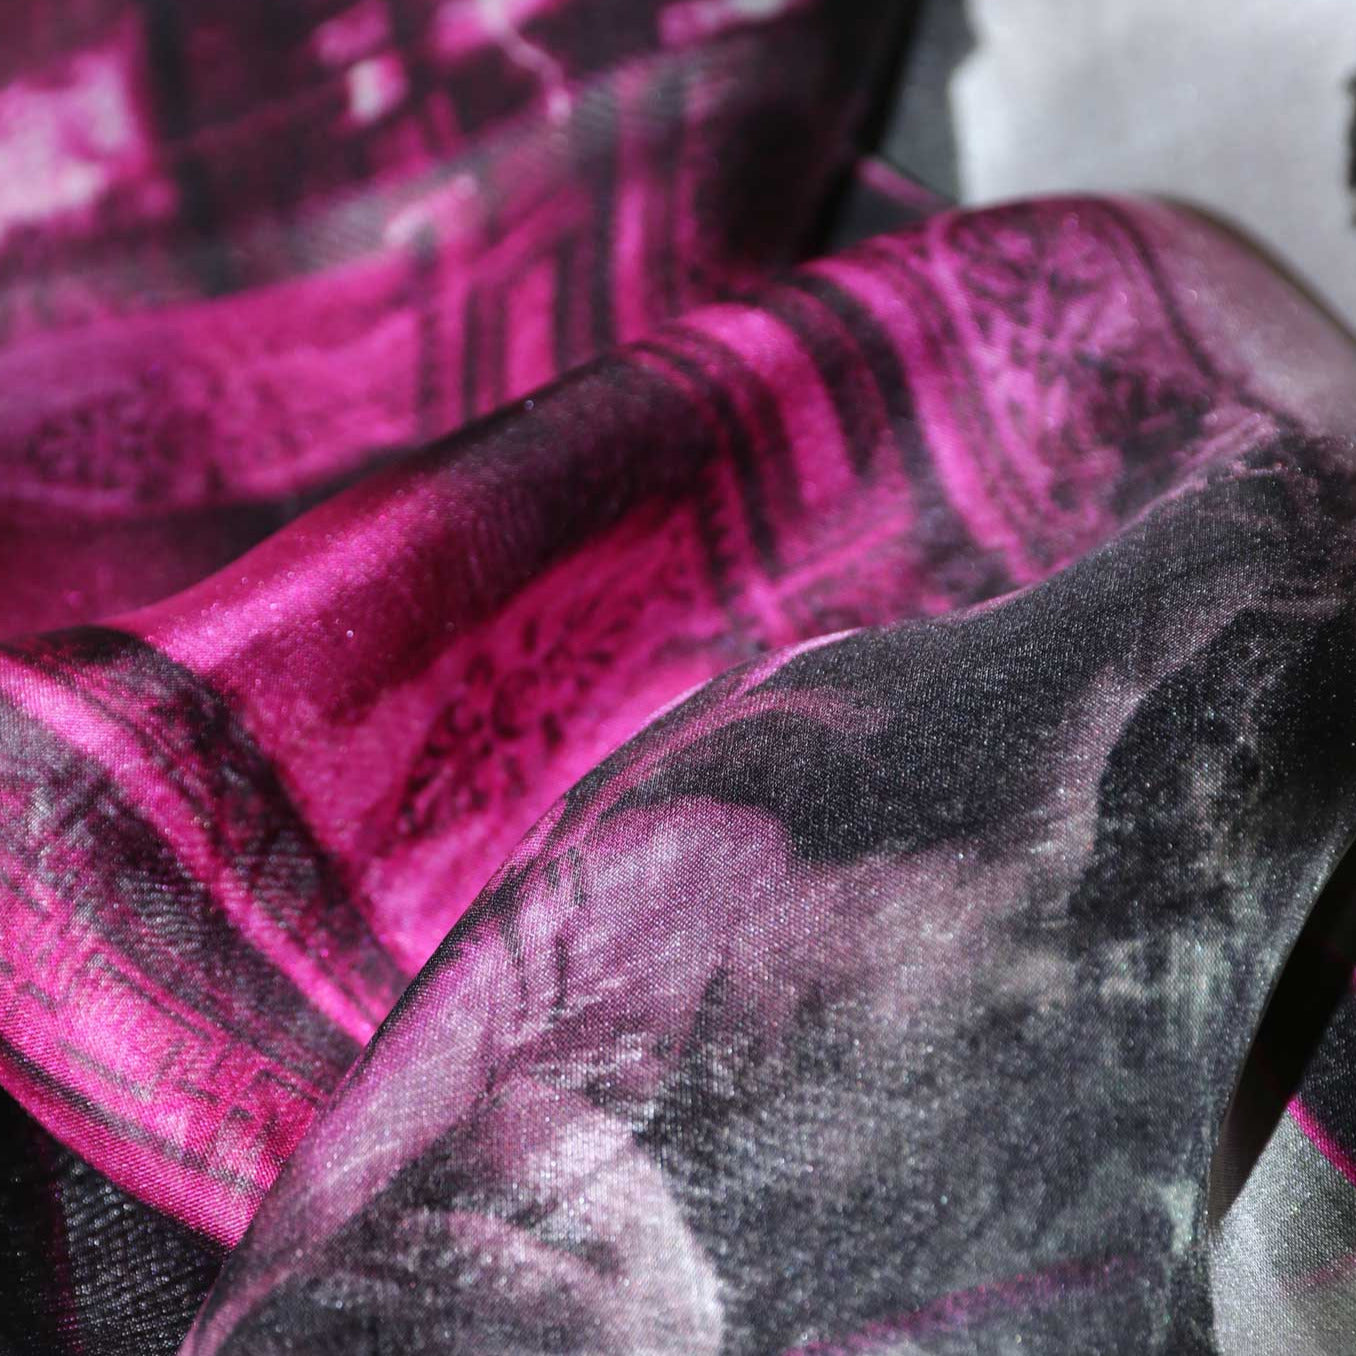 スカーフ 通販 女性 プレゼント black silk chiffon scarf from a friend of mine paris' impression online taipei tokyo